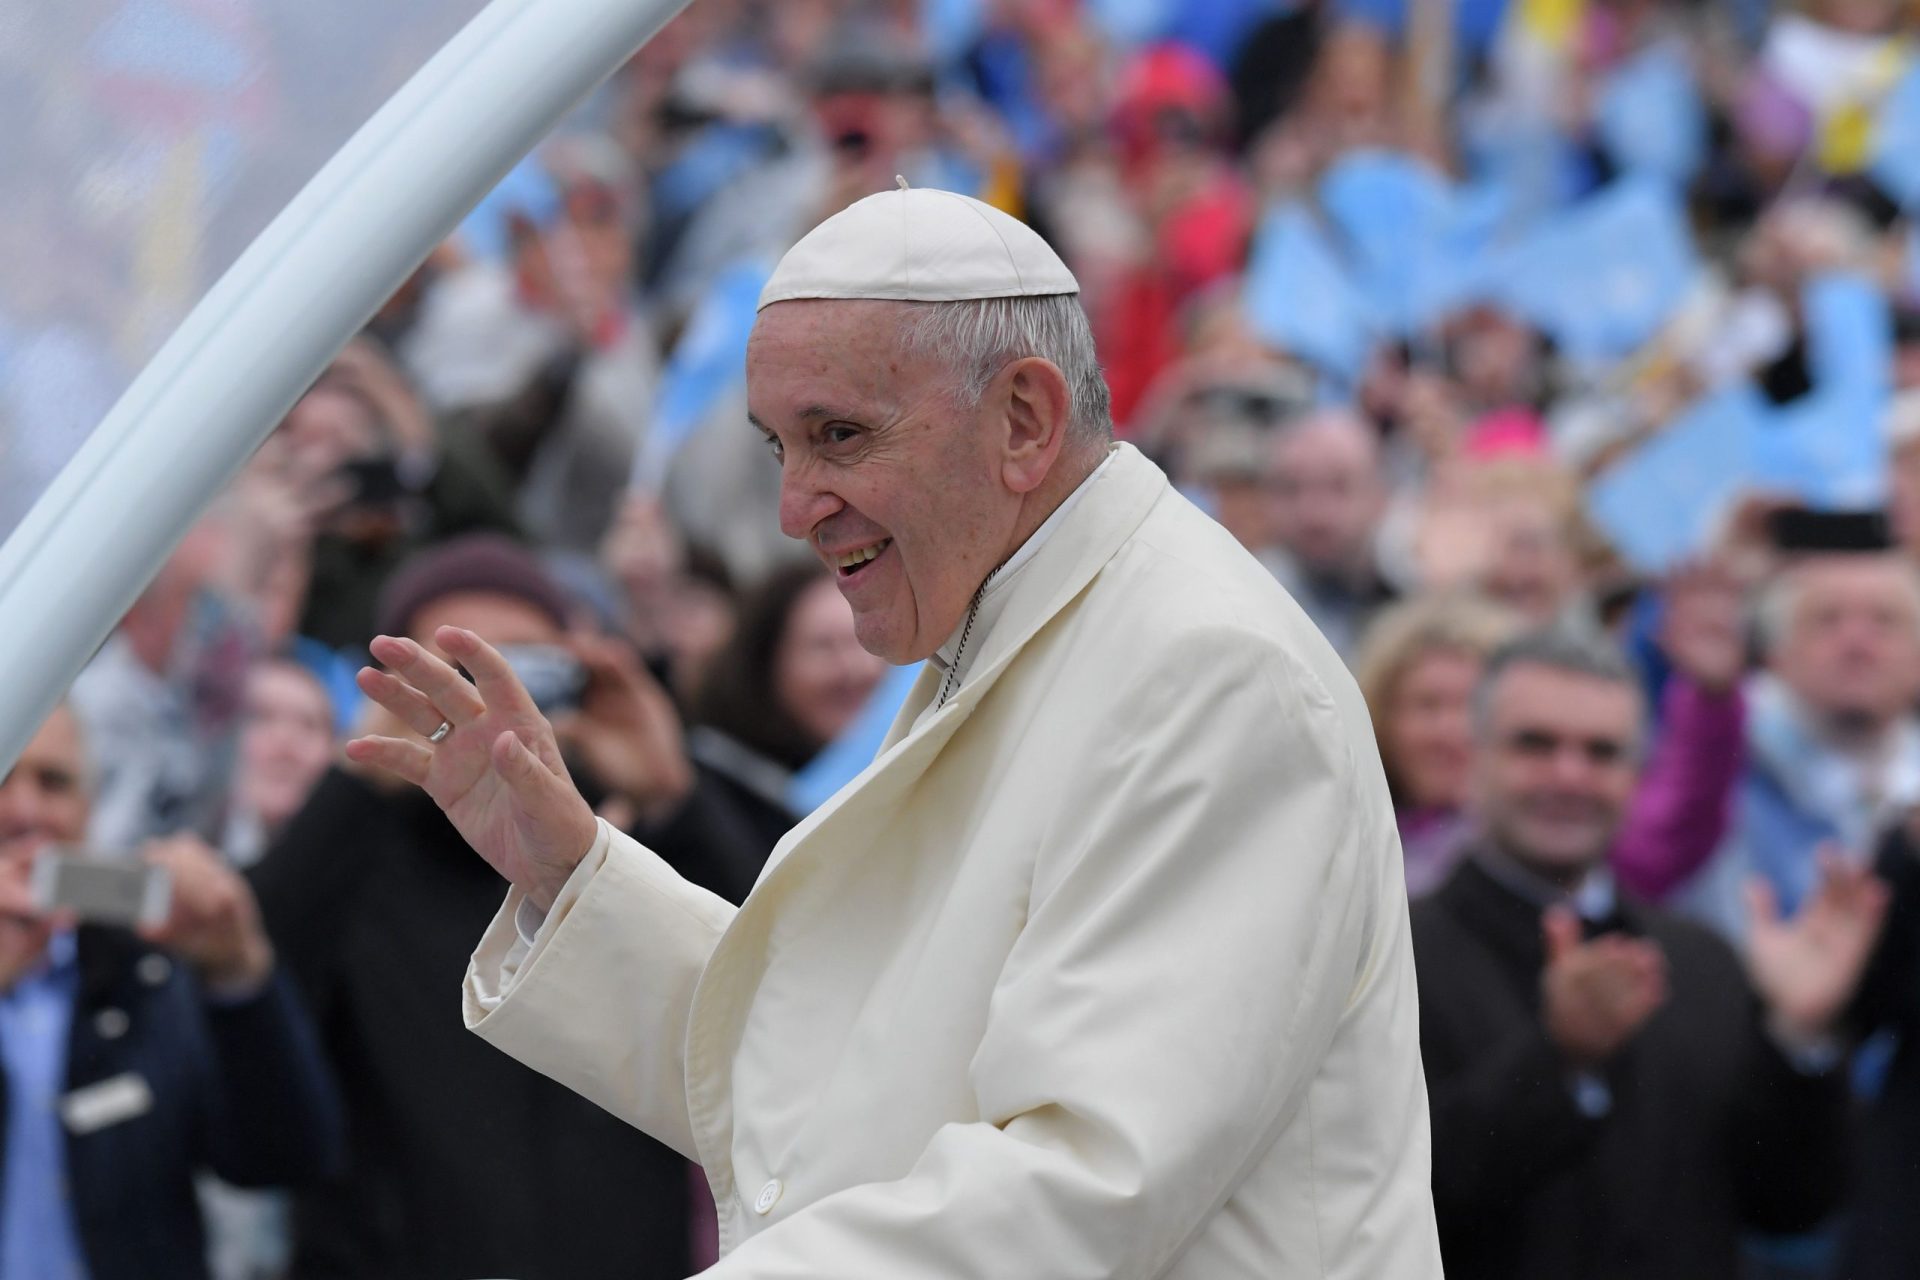 Associações de defesa dos direitos LGBT francesas criticam palavras do papa sobre homossexualidade